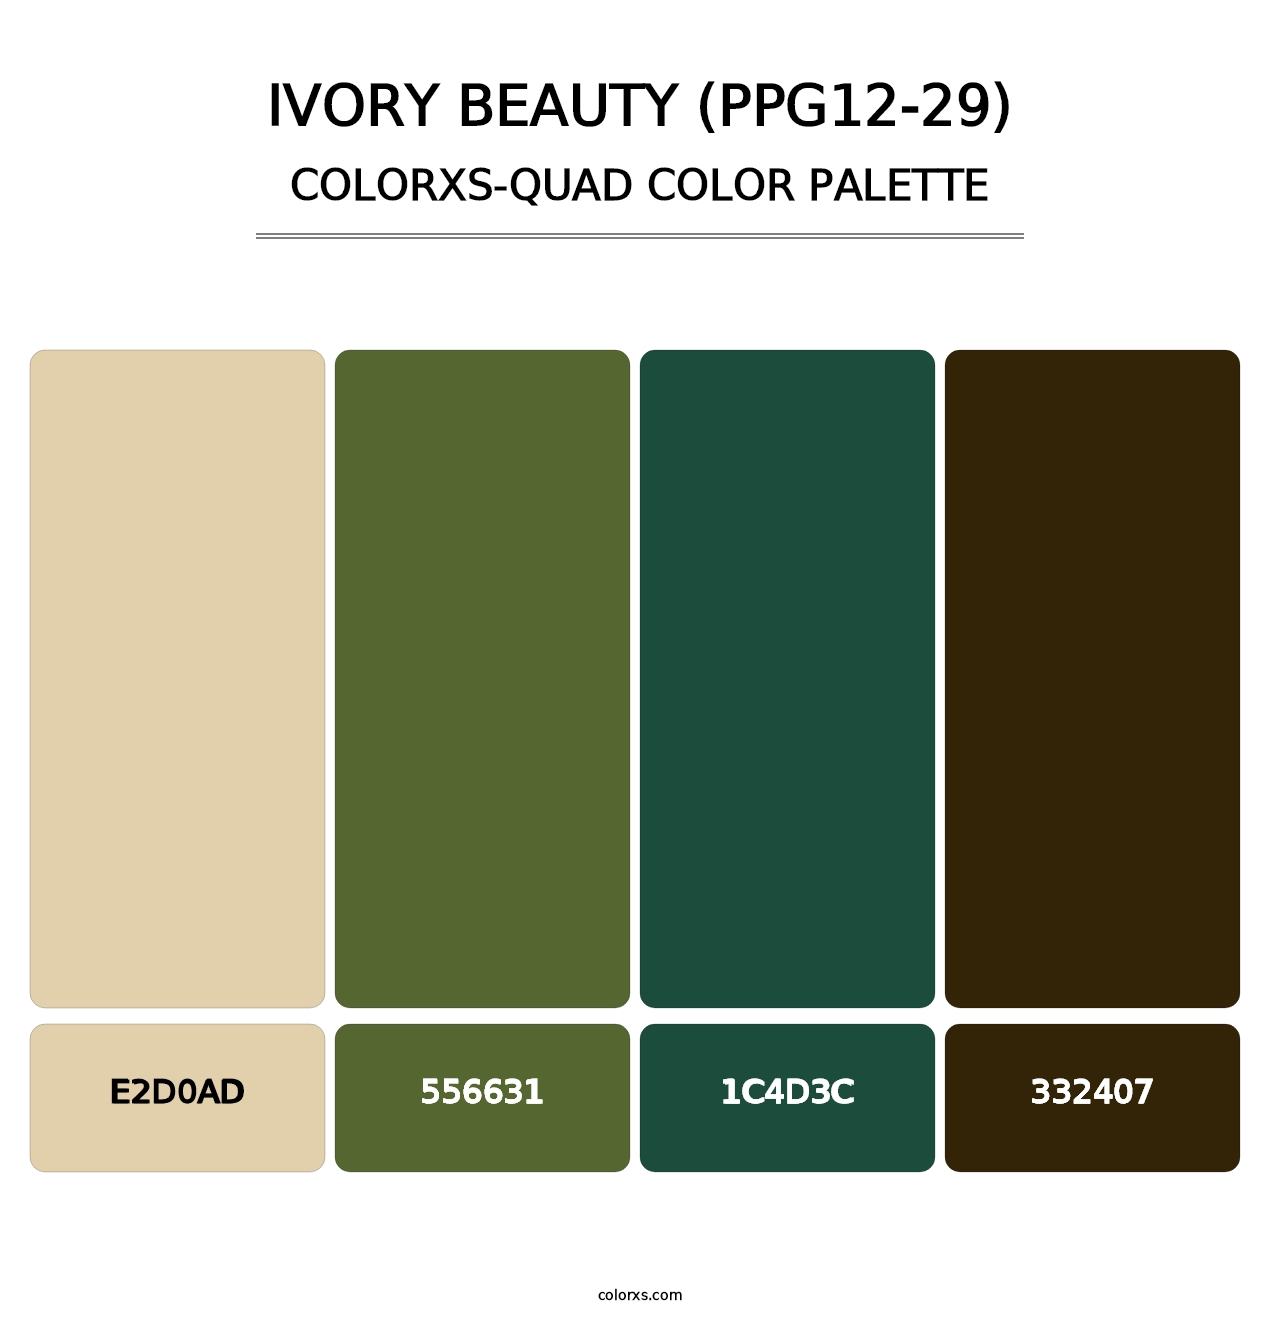 Ivory Beauty (PPG12-29) - Colorxs Quad Palette